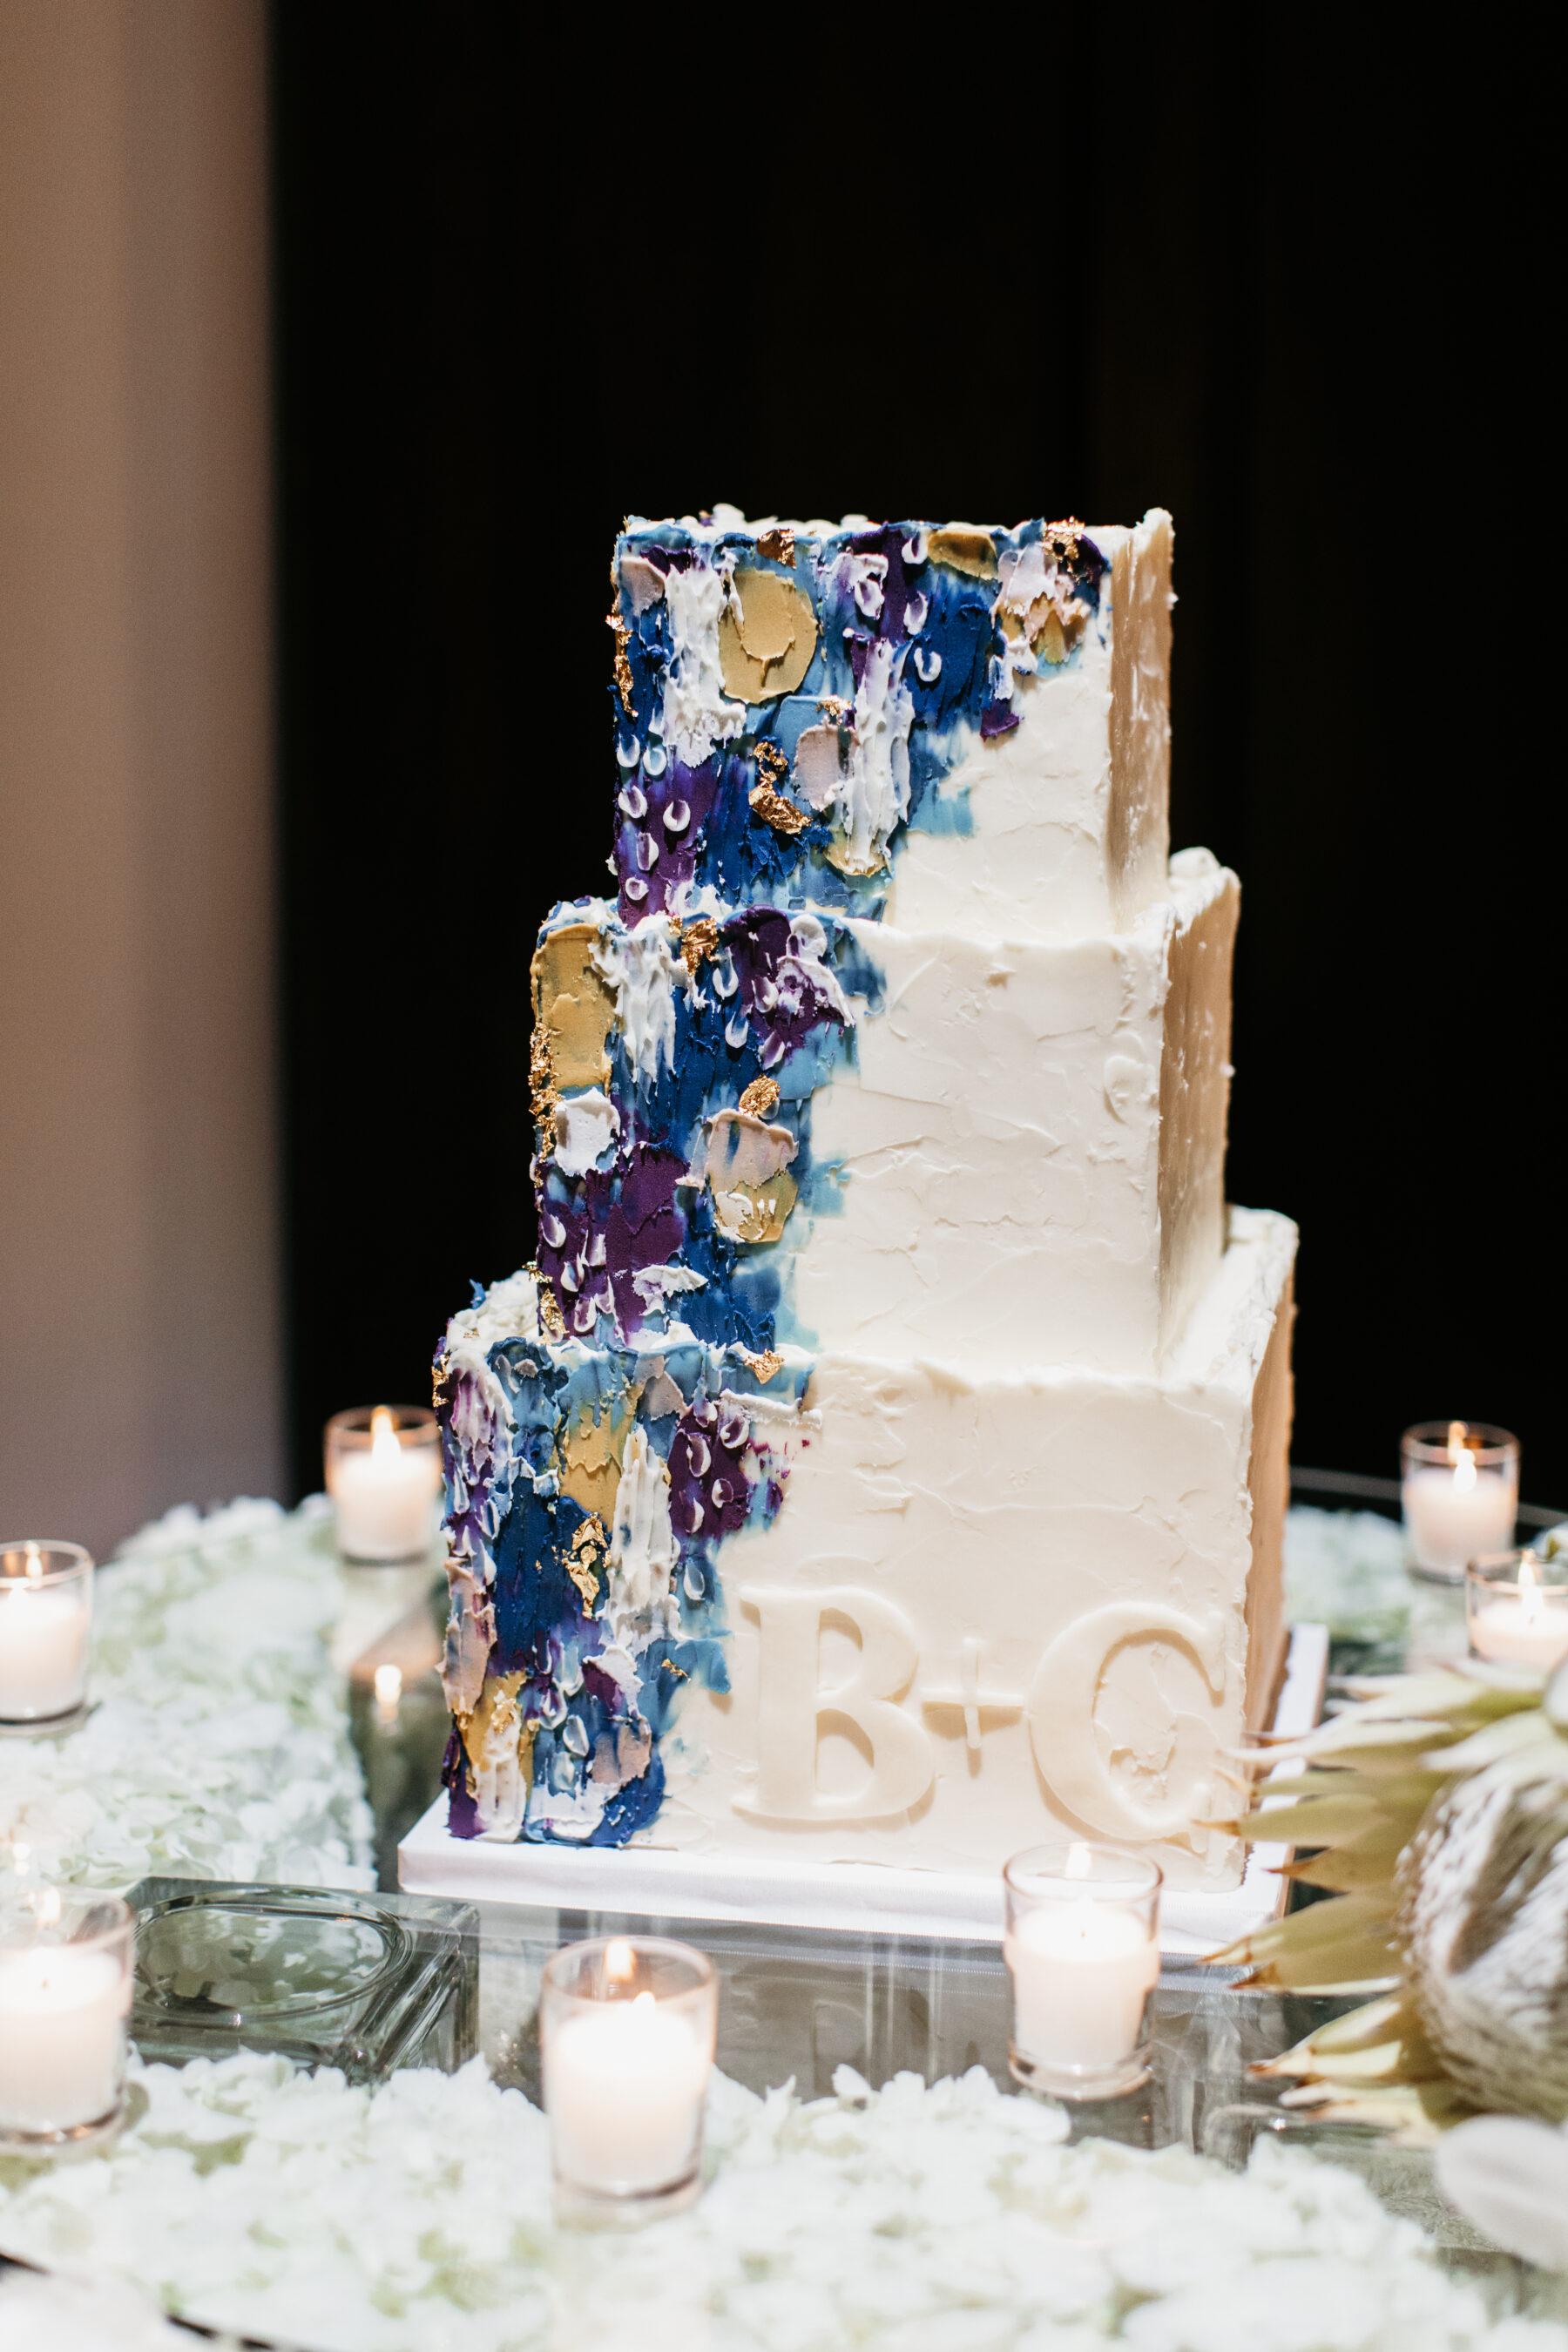 Modern wedding cake design by Baked in Nashville | Nashville Bride Guide